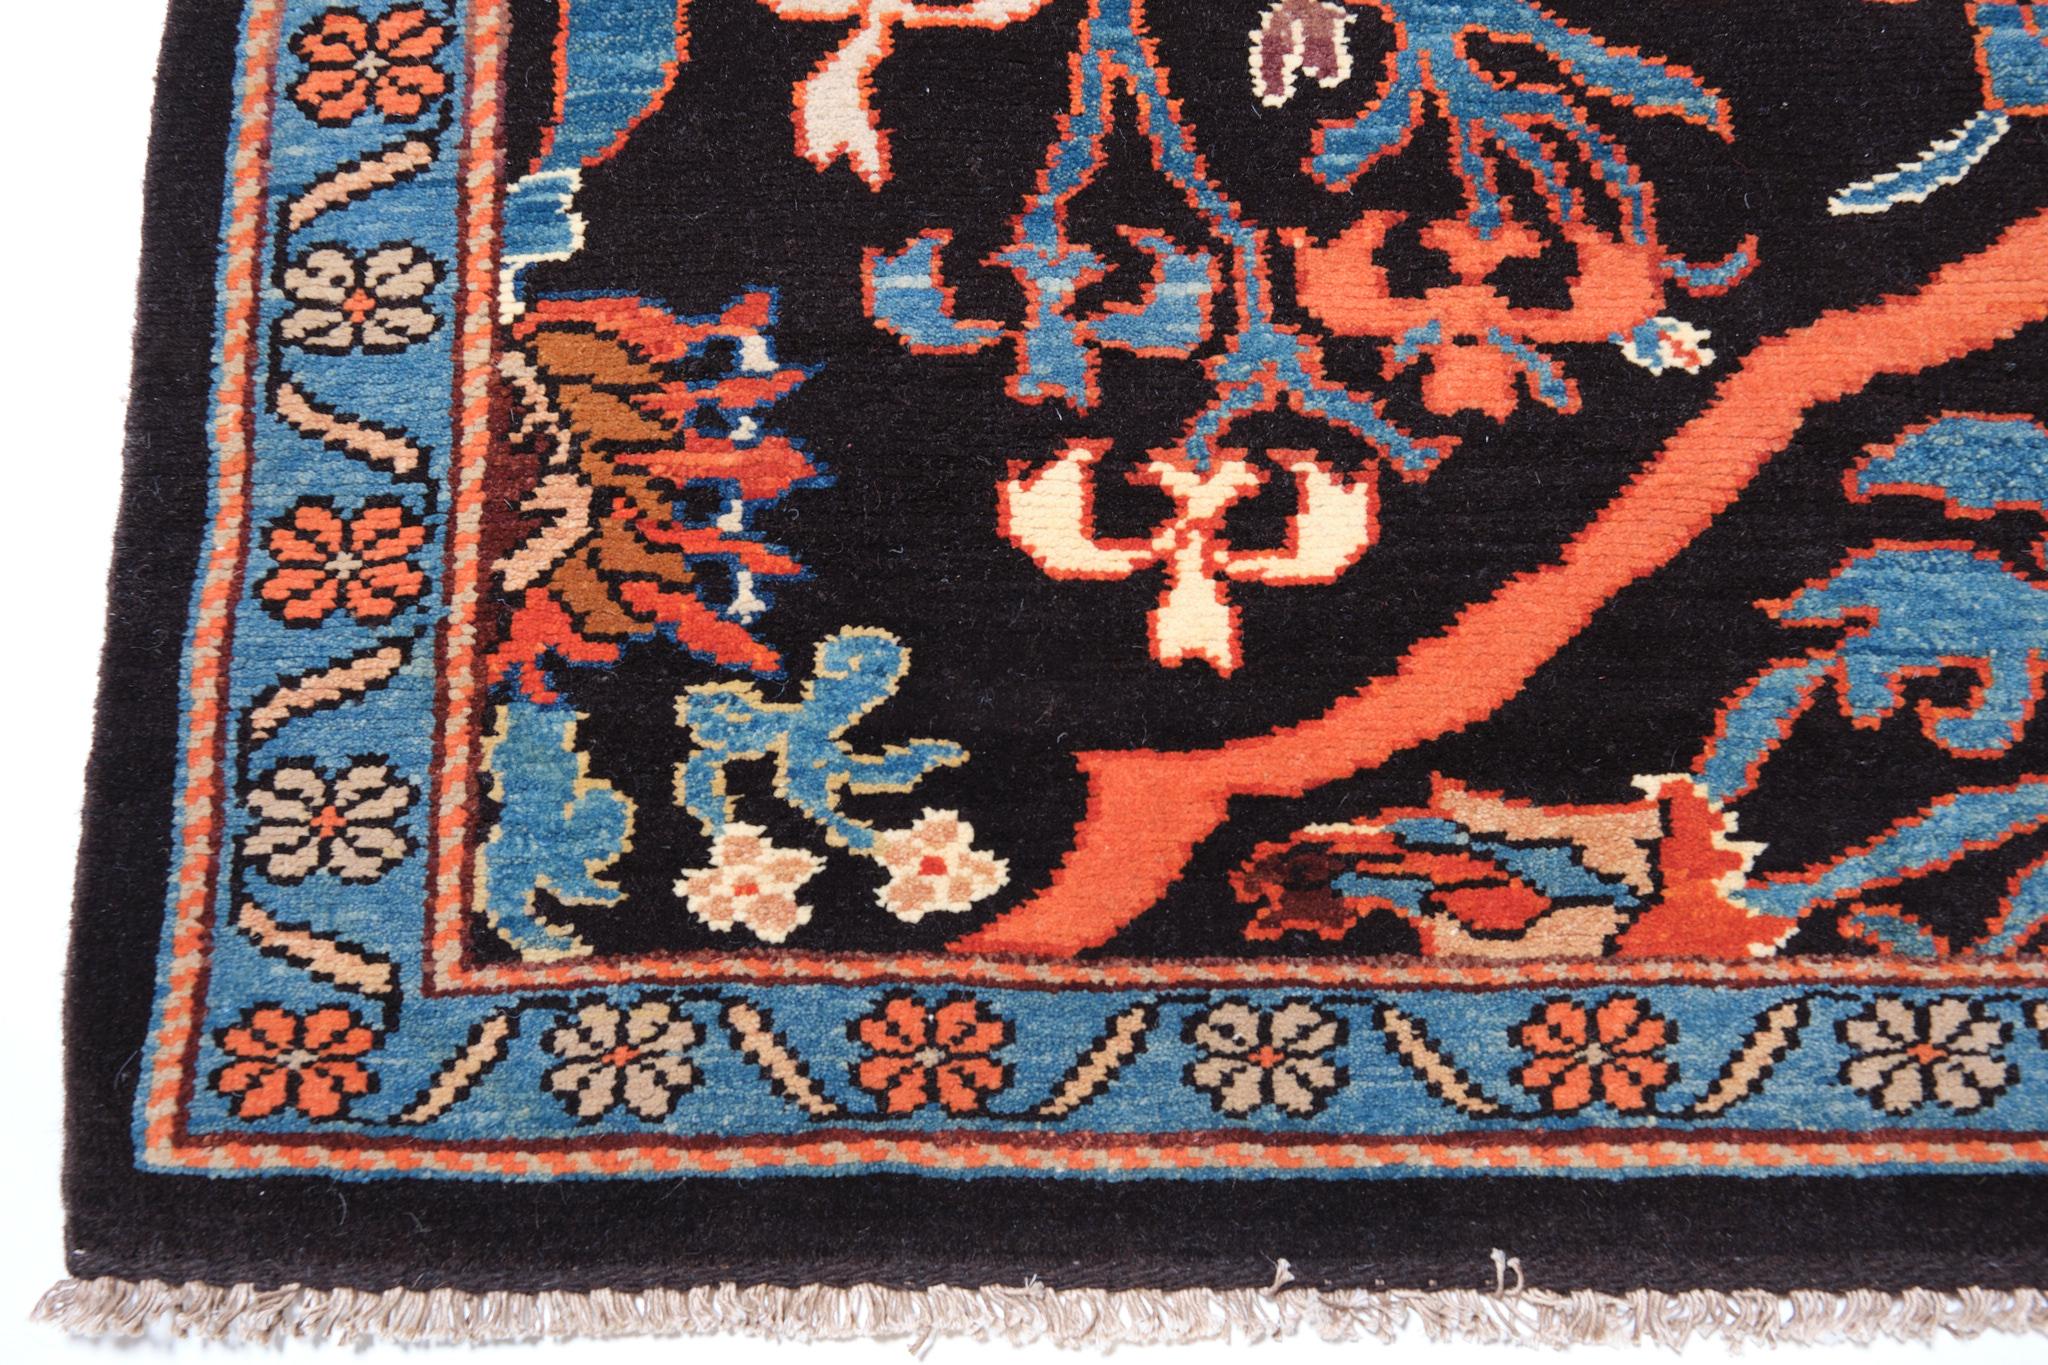 Dies ist ein Teppich im arabesken Stil mit Palmetten und Blumen aus dem 19. Jahrhundert aus der Region Garrus (Gerous oder Garus) in Ostkurdistan. Garrus liegt in den Ausläufern des persischen Flachlandes und ist seit der Antike eine bedeutende